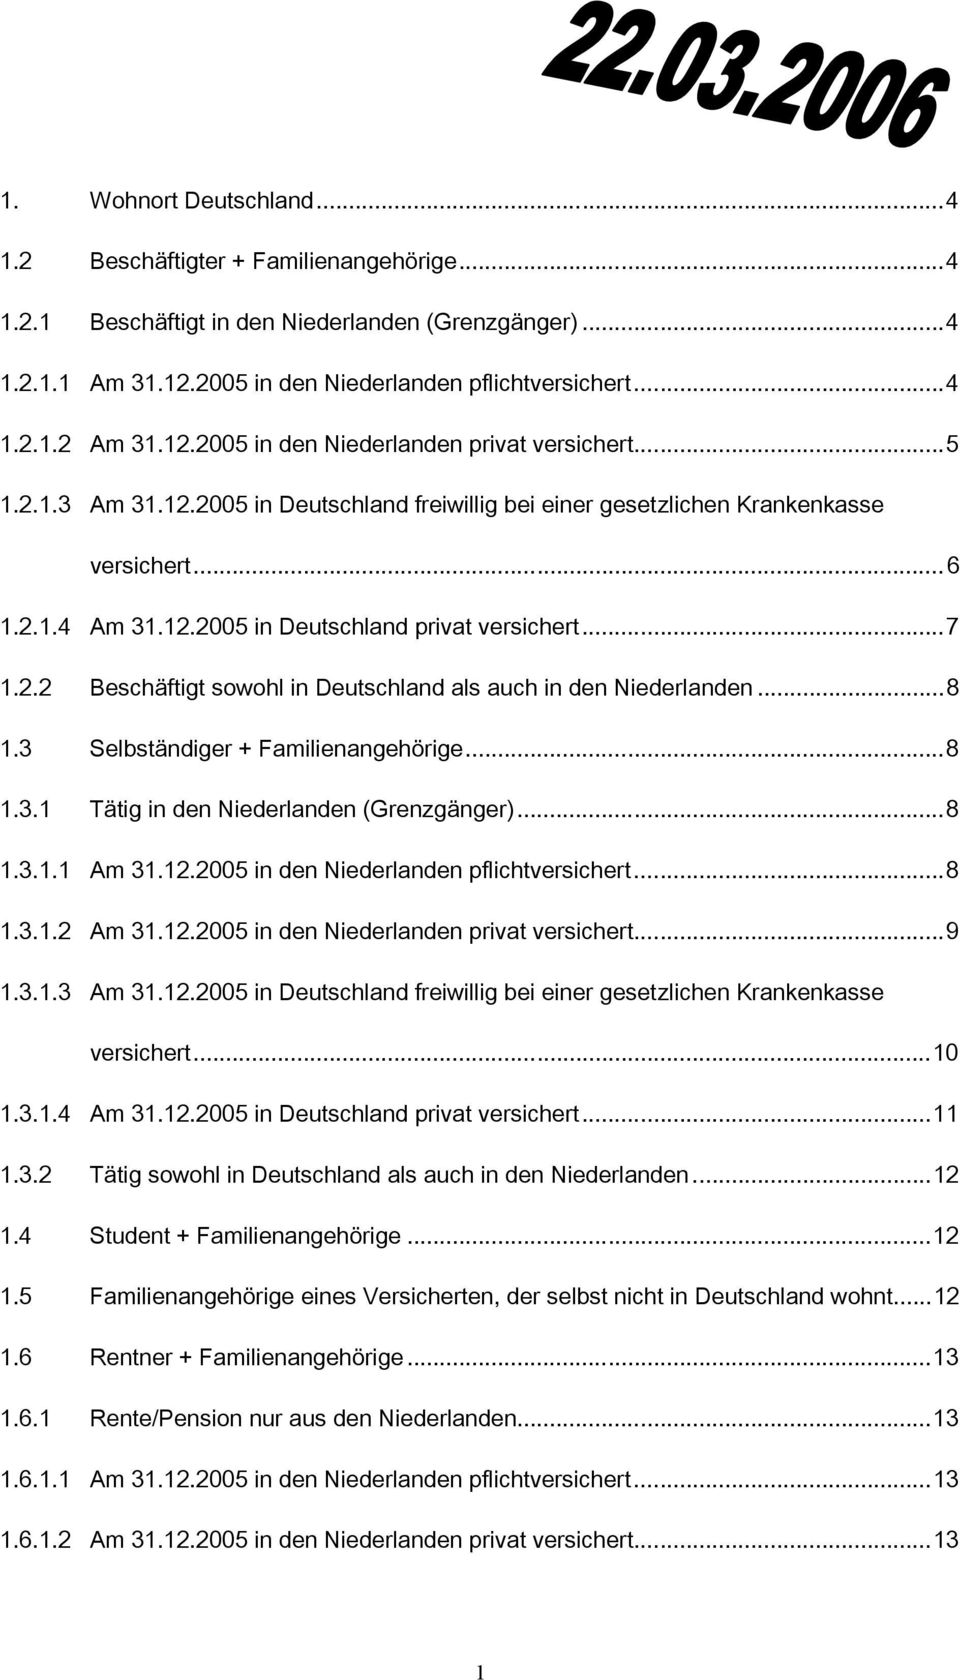 ..7 1.2.2 Beschäftigt sowohl in Deutschland als auch in den Niederlanden...8 1.3 Selbständiger + Familienangehörige...8 1.3.1 Tätig in den Niederlanden (Grenzgänger)...8 1.3.1.1 Am 31.12.